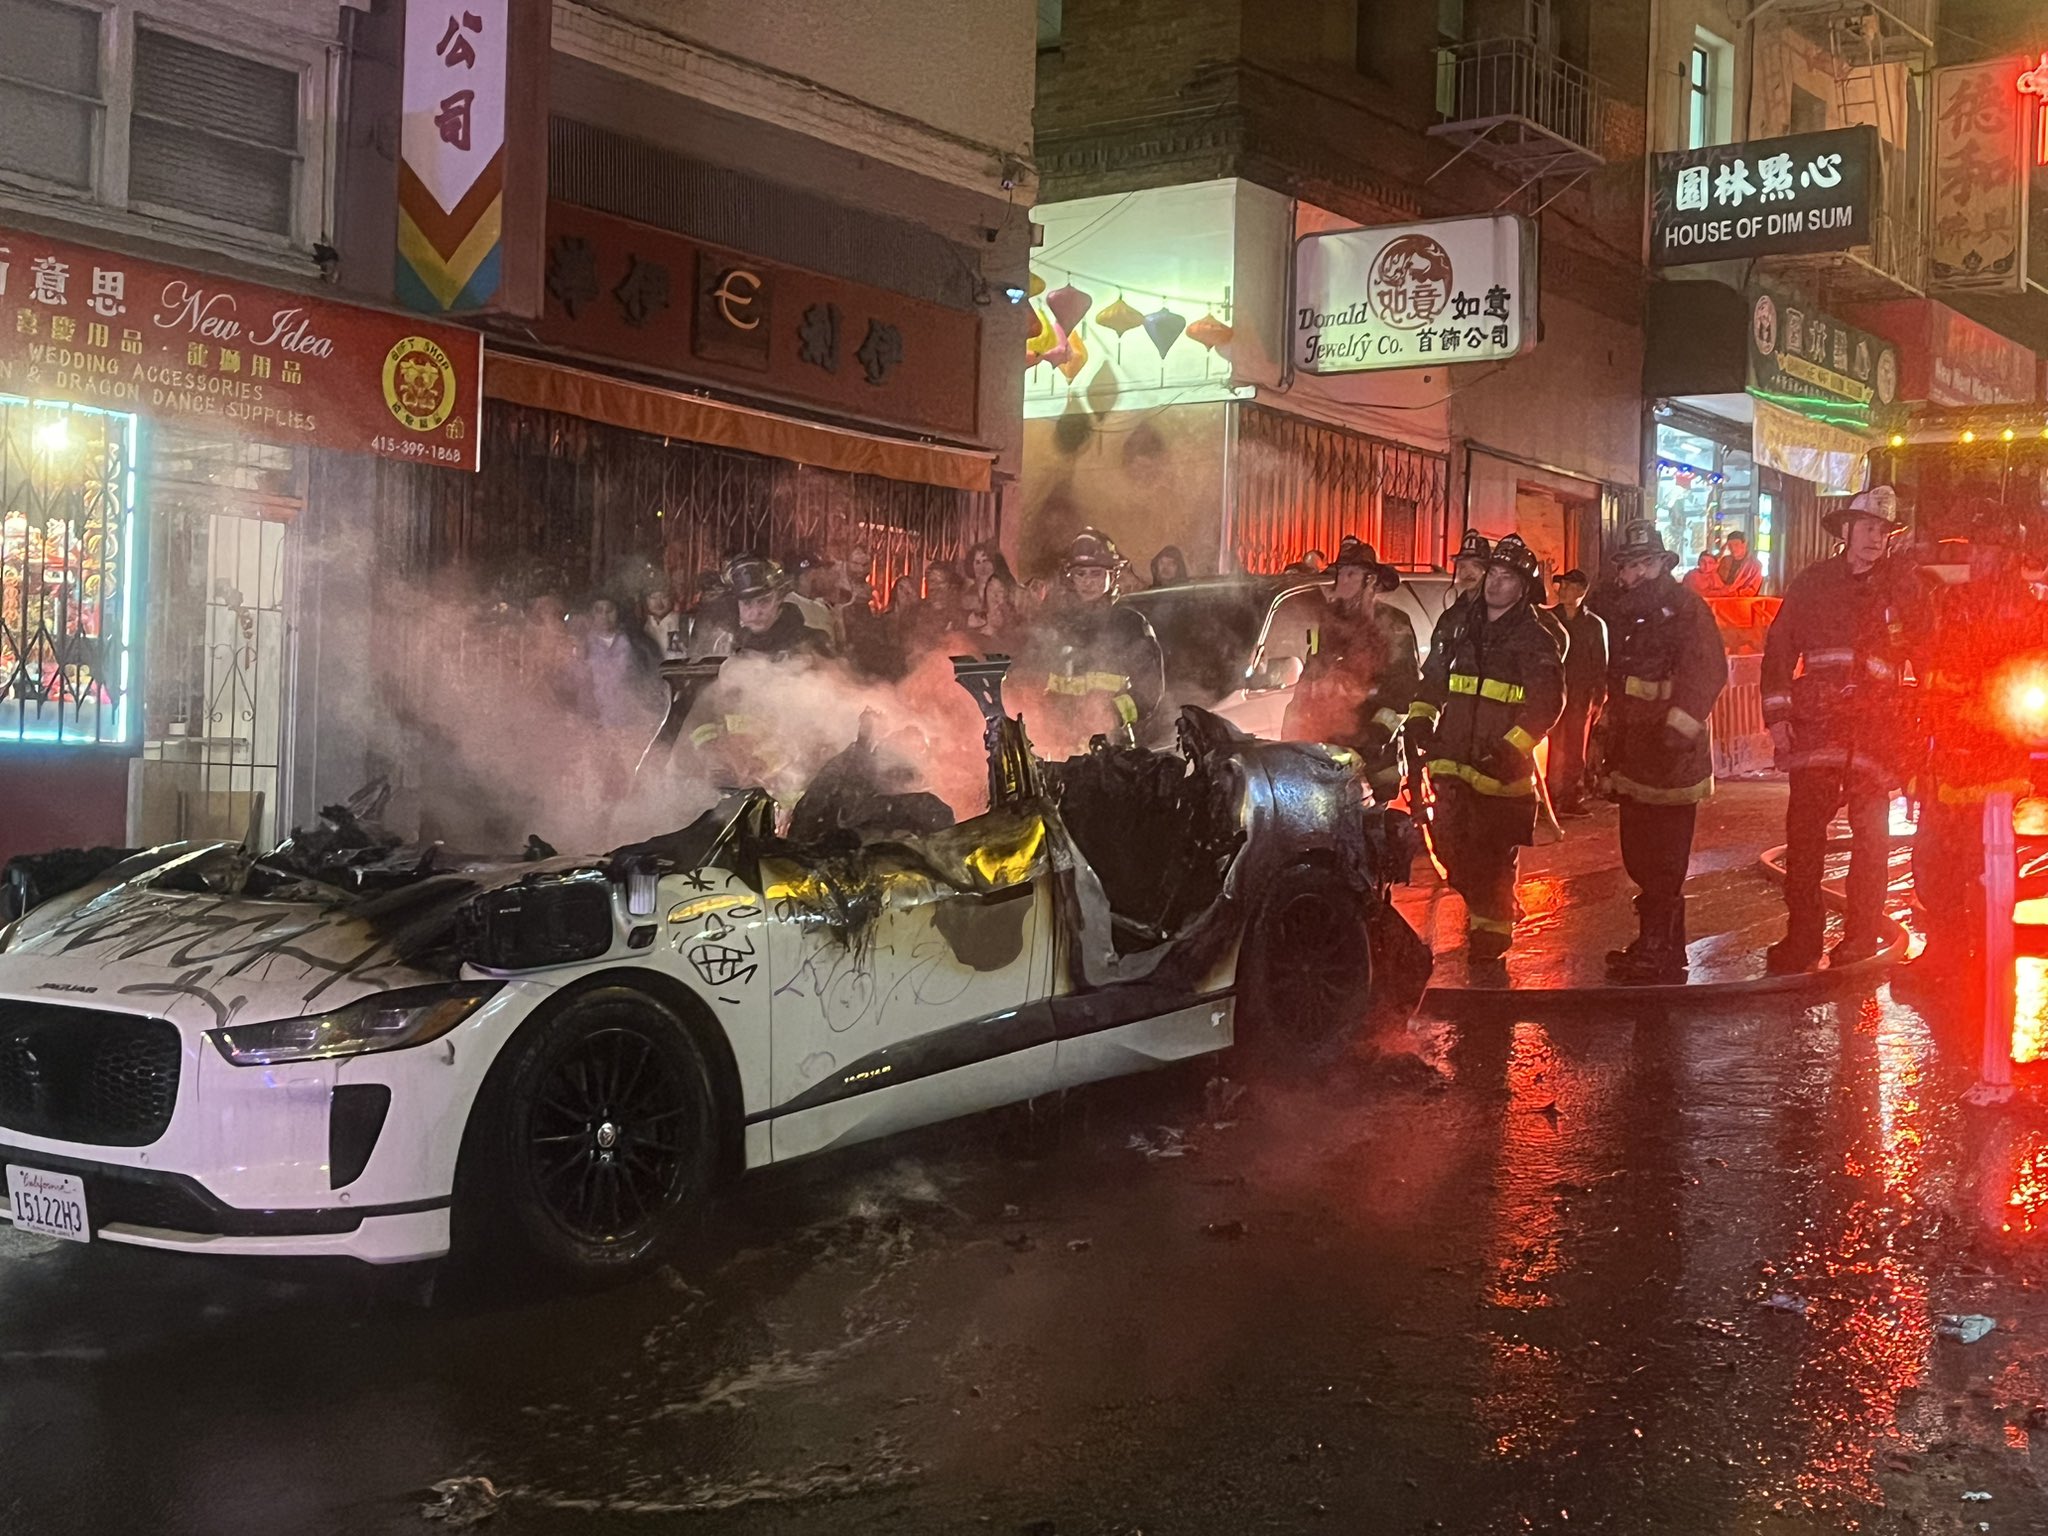 A smoking car hulk beside fire fighters.